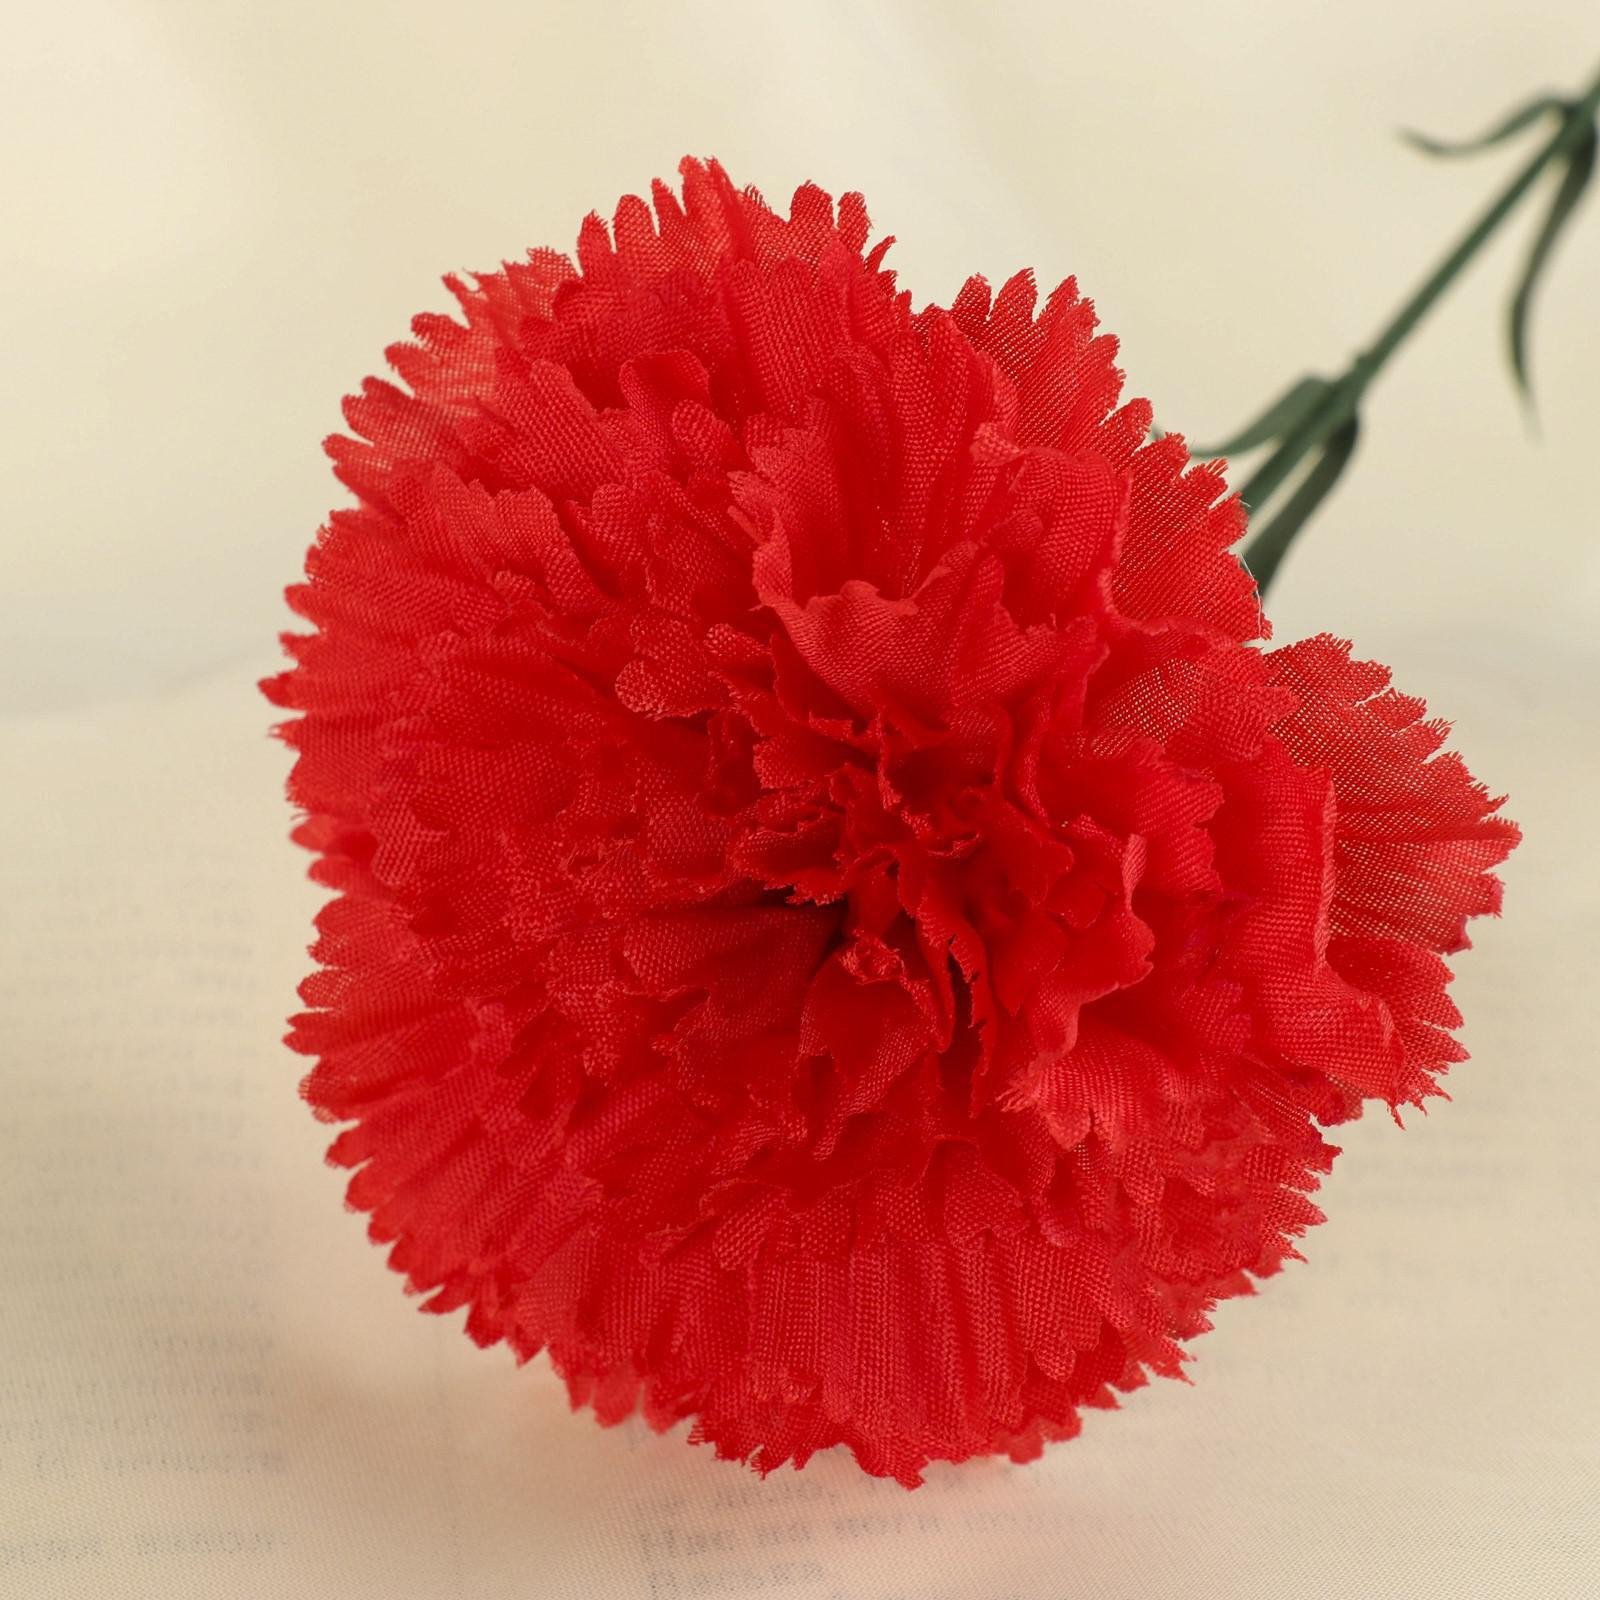 Carnation гвоздика красная